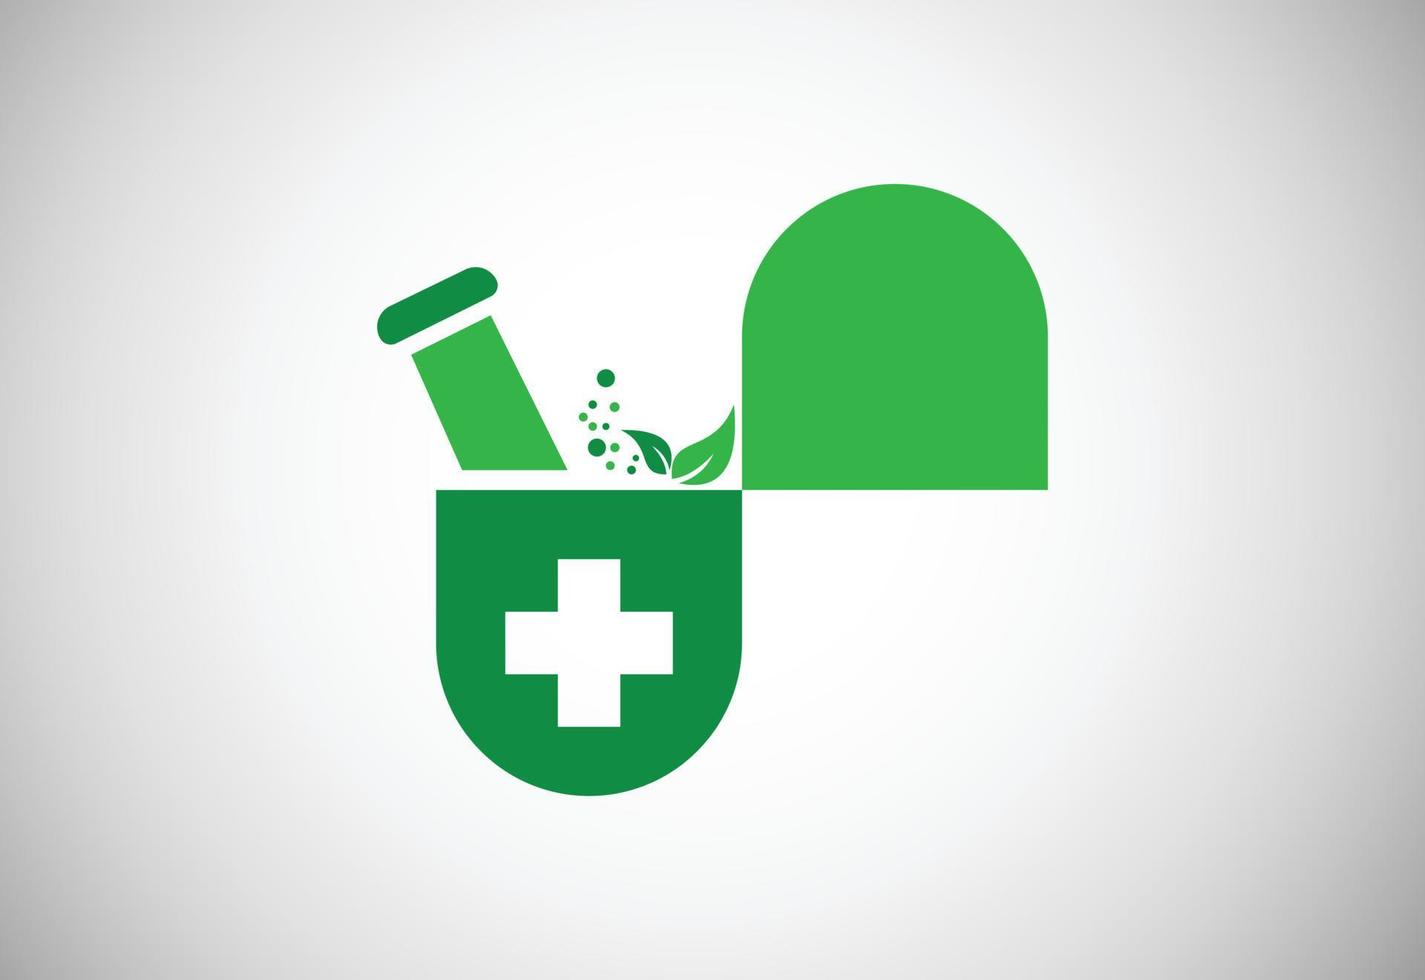 design de logotipo de farmácia médica criativa, conceito de design vetorial vetor